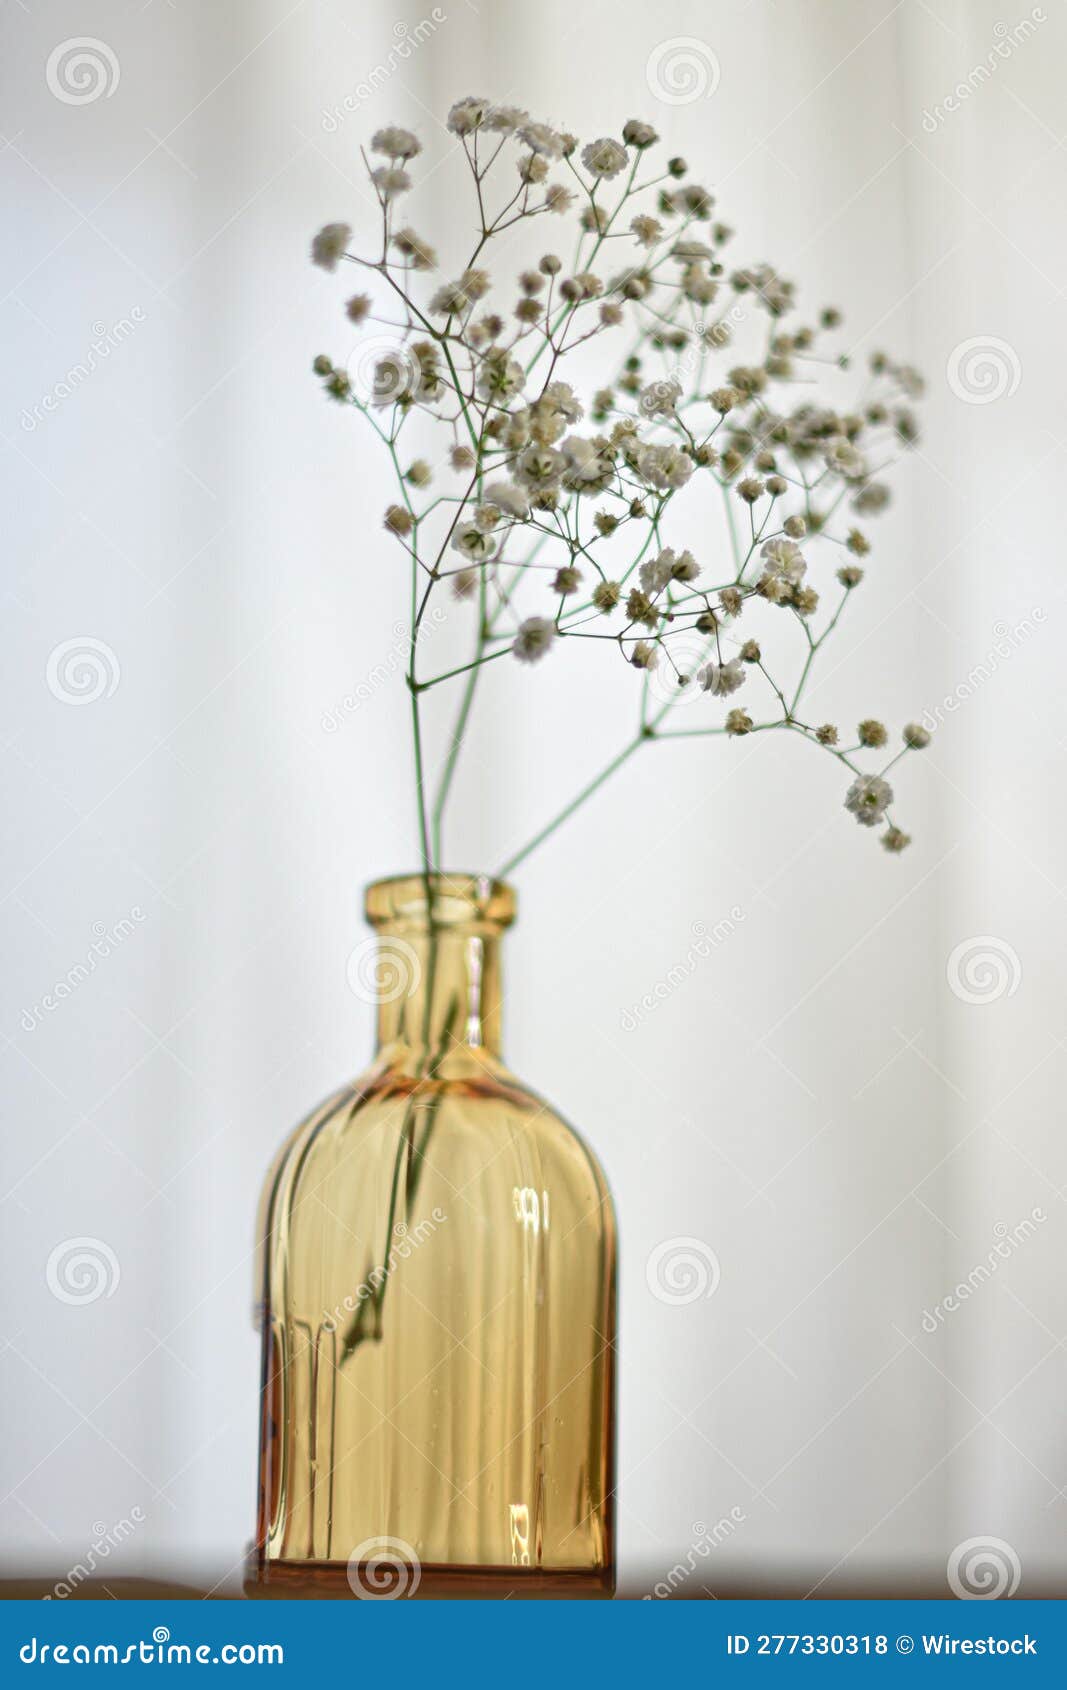 a glass bottle of flower